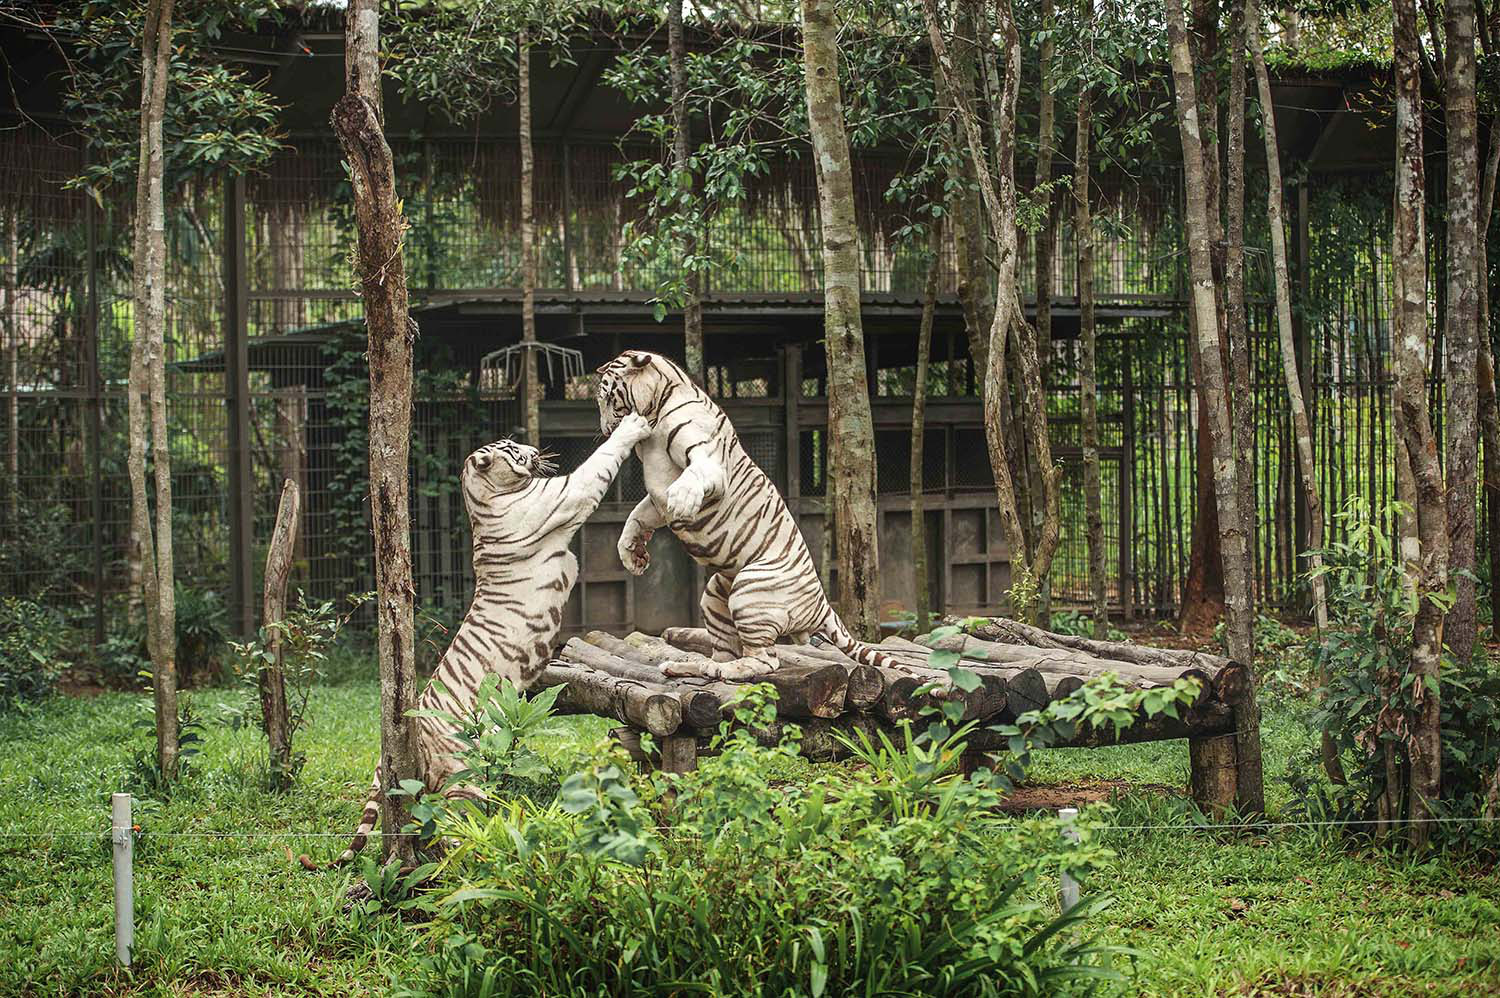 Mê mẩn ngắm sư tử con, hổ... và những góc ảnh dễ thương tại vườn thú bán hoang dã Phú Quốc - Ảnh 12.